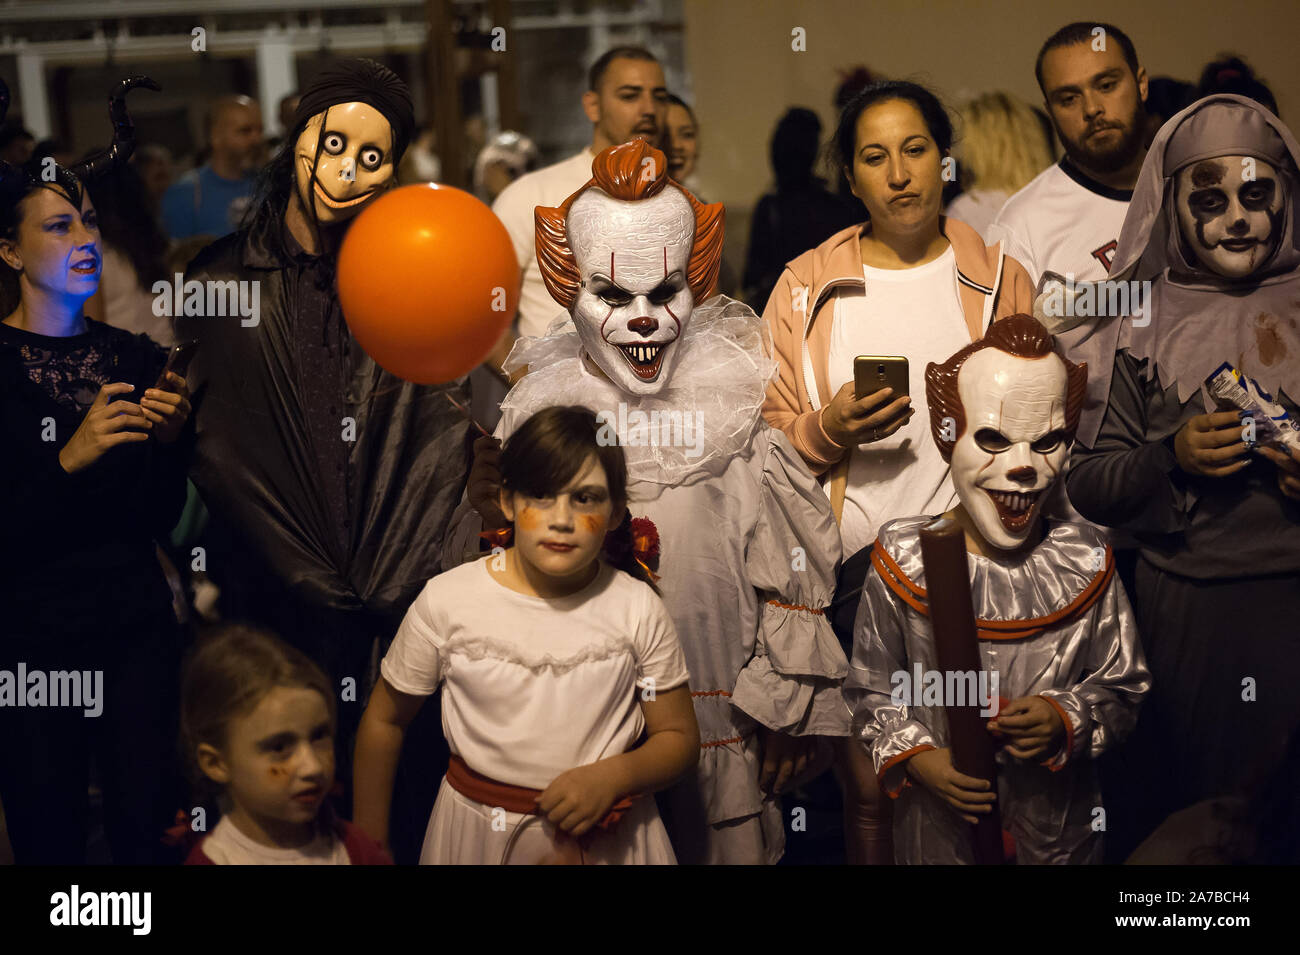 Malaga, Spanien. 31 Okt, 2019. Menschen tragen Halloween Kostüme Teil während der VI-Ausgabe von 'Churriana Noche del Terror" (churriana Horror Night) die Halloween Nacht in der Nachbarschaft von Churriana zu feiern. Wohnsitz in Churriana beteiligen sich an der Halloween Tag mit schrecklichen Kostüme gekleidet, ihre Häuser zu verzieren und mit unheimlichen Leistungen entlang der Straßen. Die 'Churriana Horror Night' ist eine der beliebtesten Veranstaltungen in der Stadt markiert die Halloween Tag, und bei dieser Gelegenheit das Thema der Ausgabe ist die Hexen. Credit: SOPA Images Limited/Alamy leben Nachrichten Stockfoto